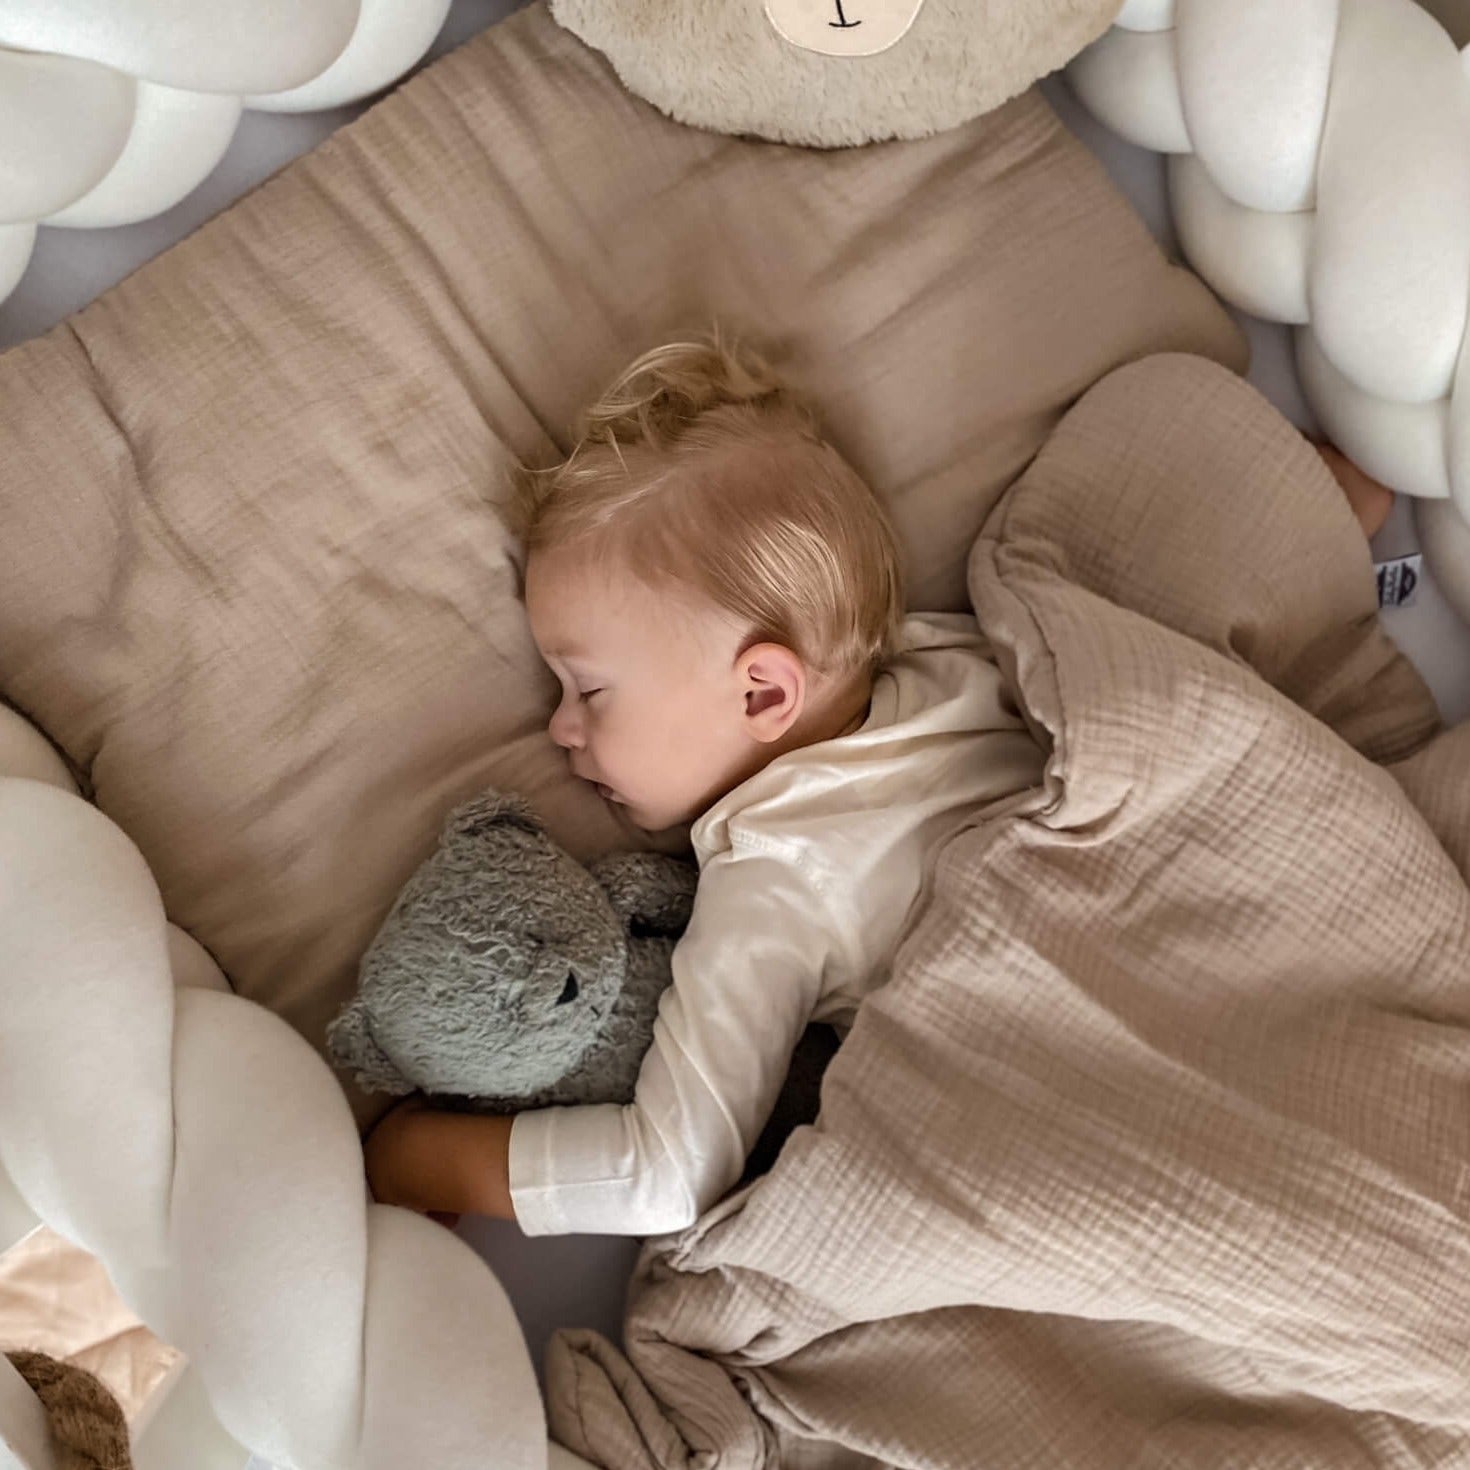 Bettwäsche aus Musselinstof, handmade, babyboom shop for kids